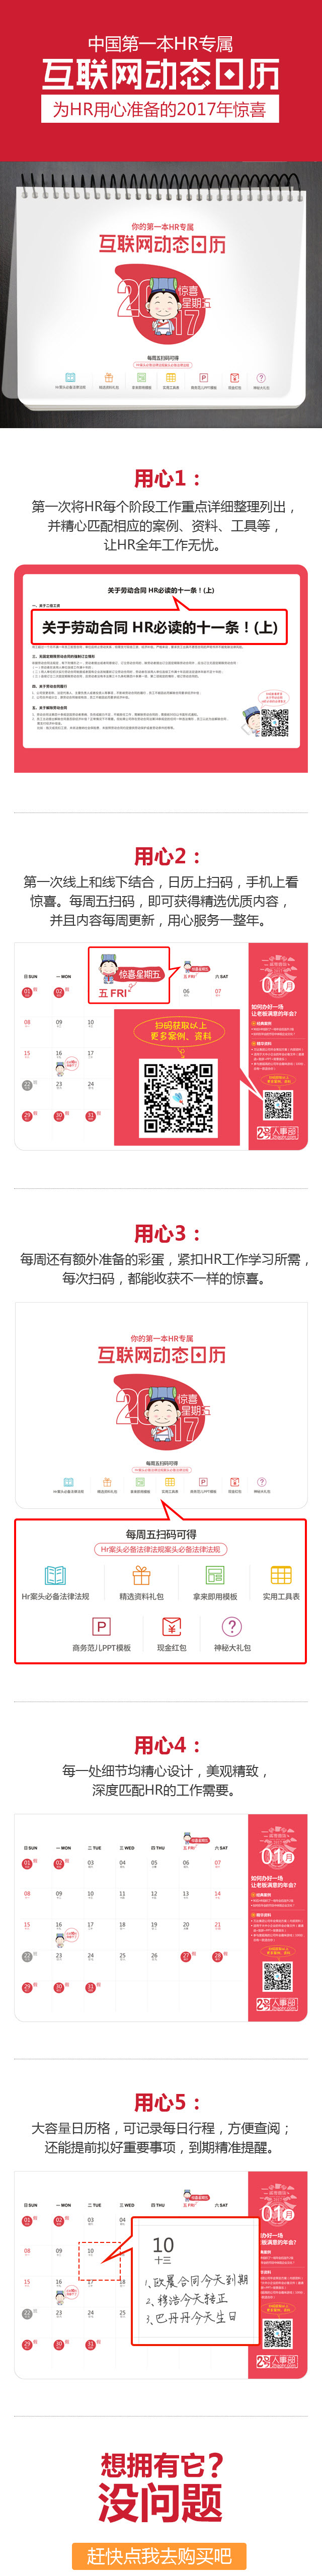 【HR工作神器】中国第一本HR专属的互联网动态日历来啦